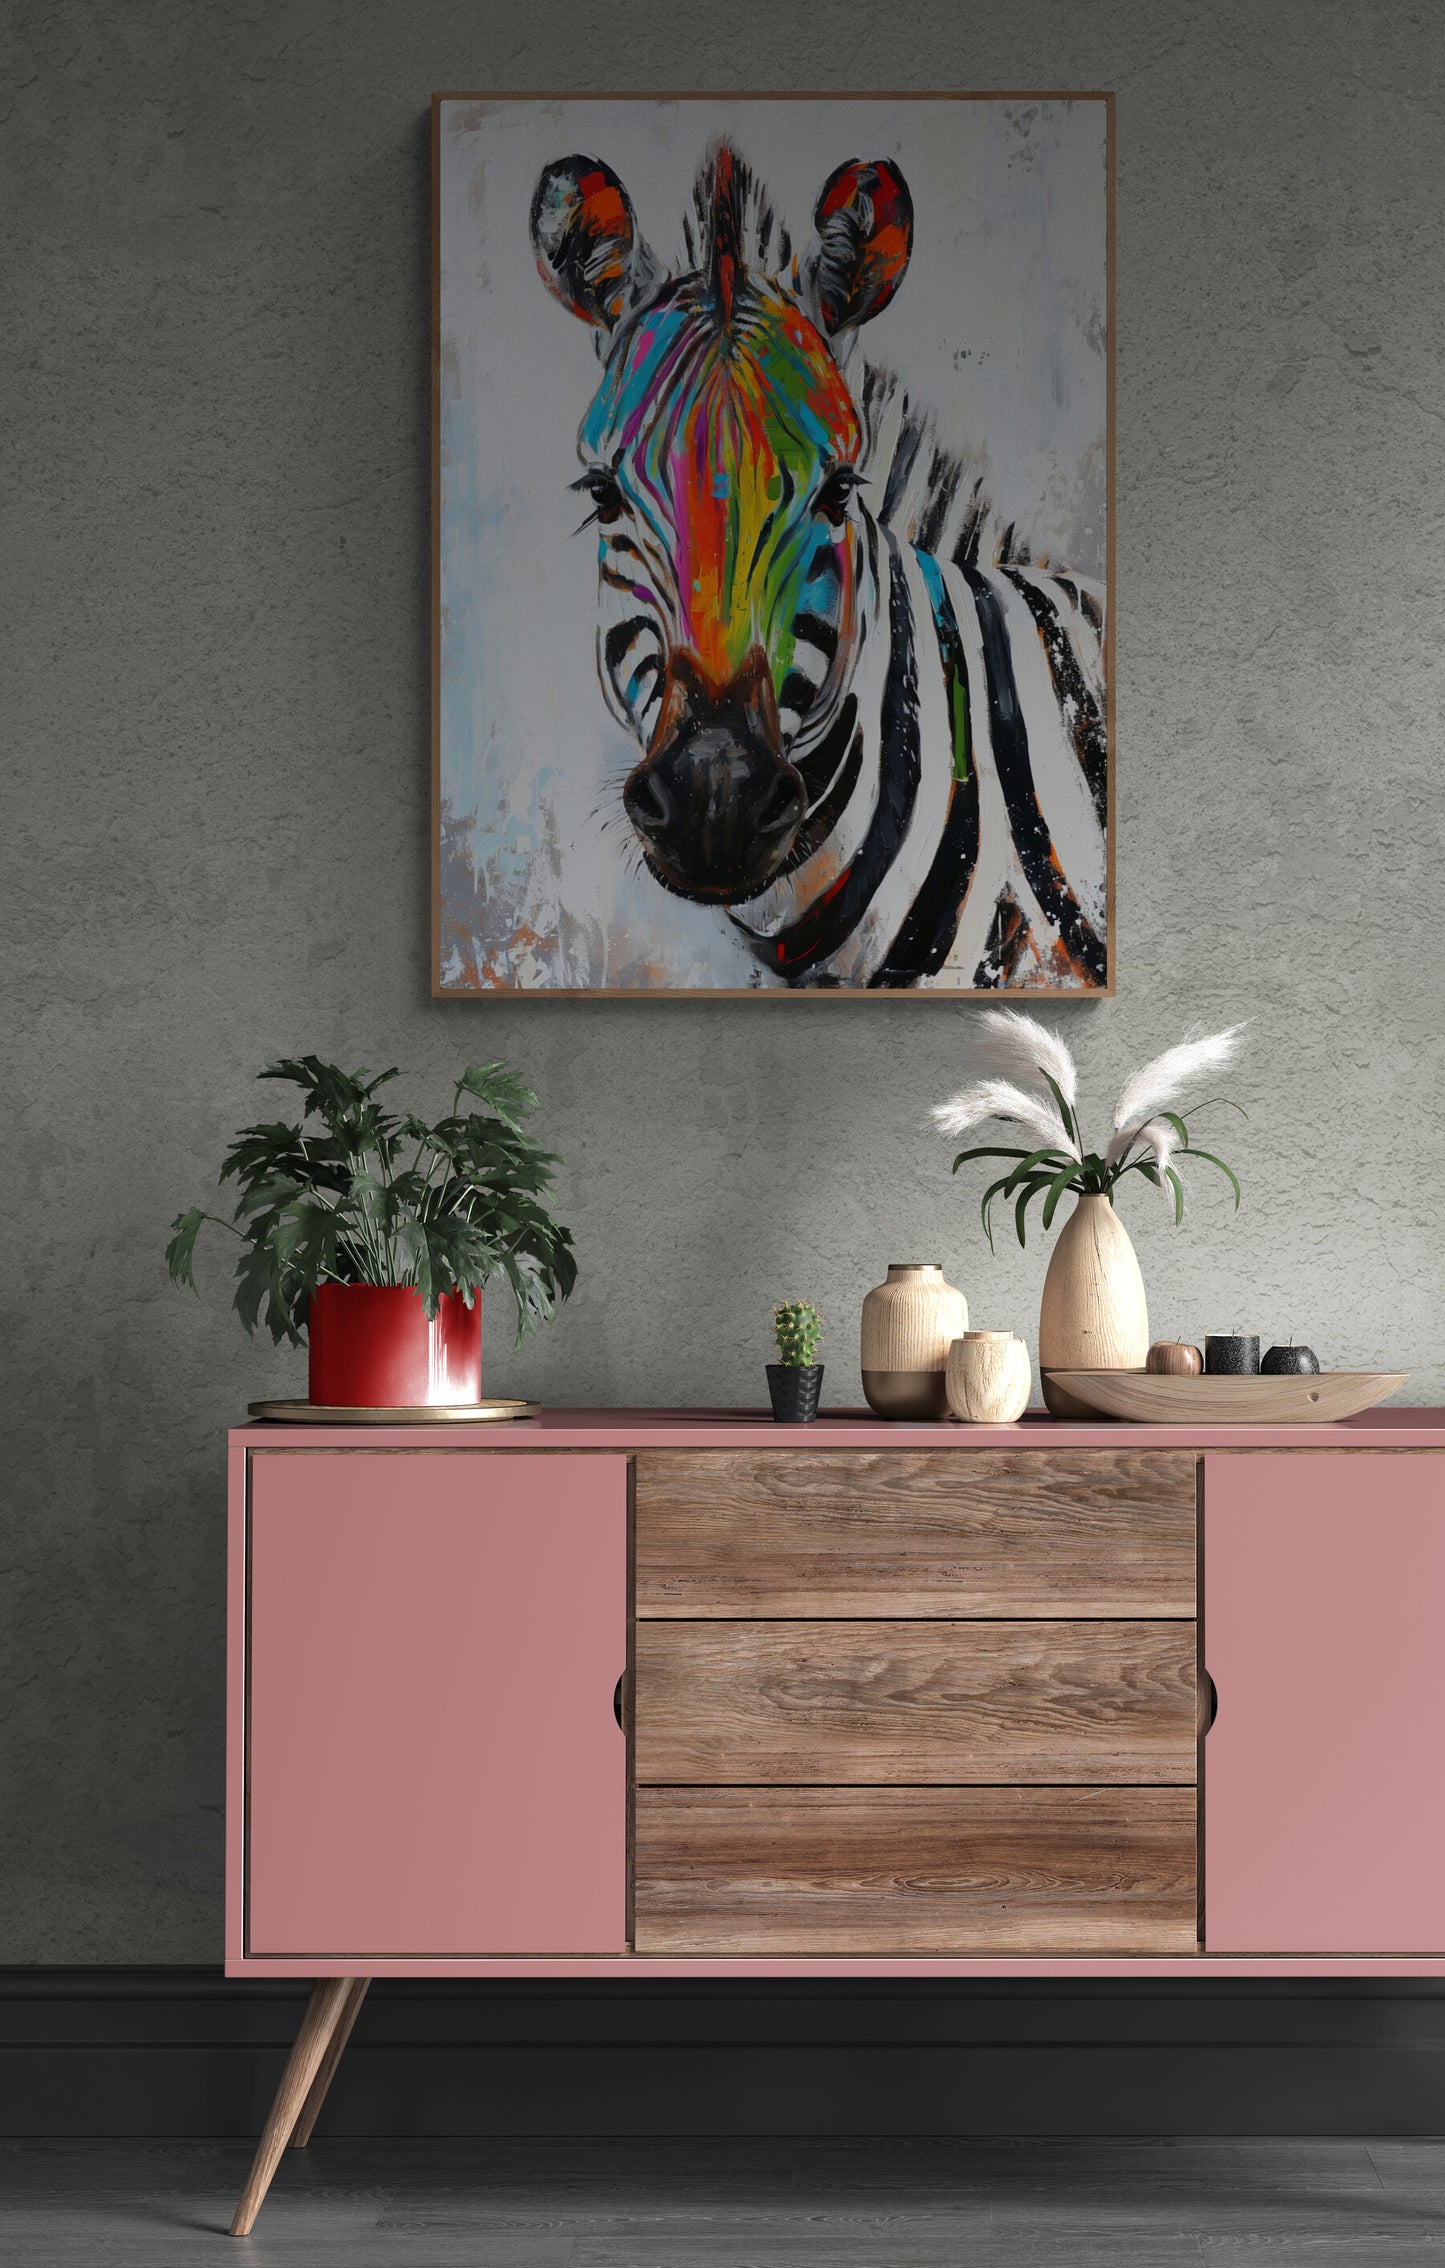 Le tableau du zèbre est le point focal au-dessus d'une console moderne rose et bois, dans un espace au design contemporain avec des touches de végétation.